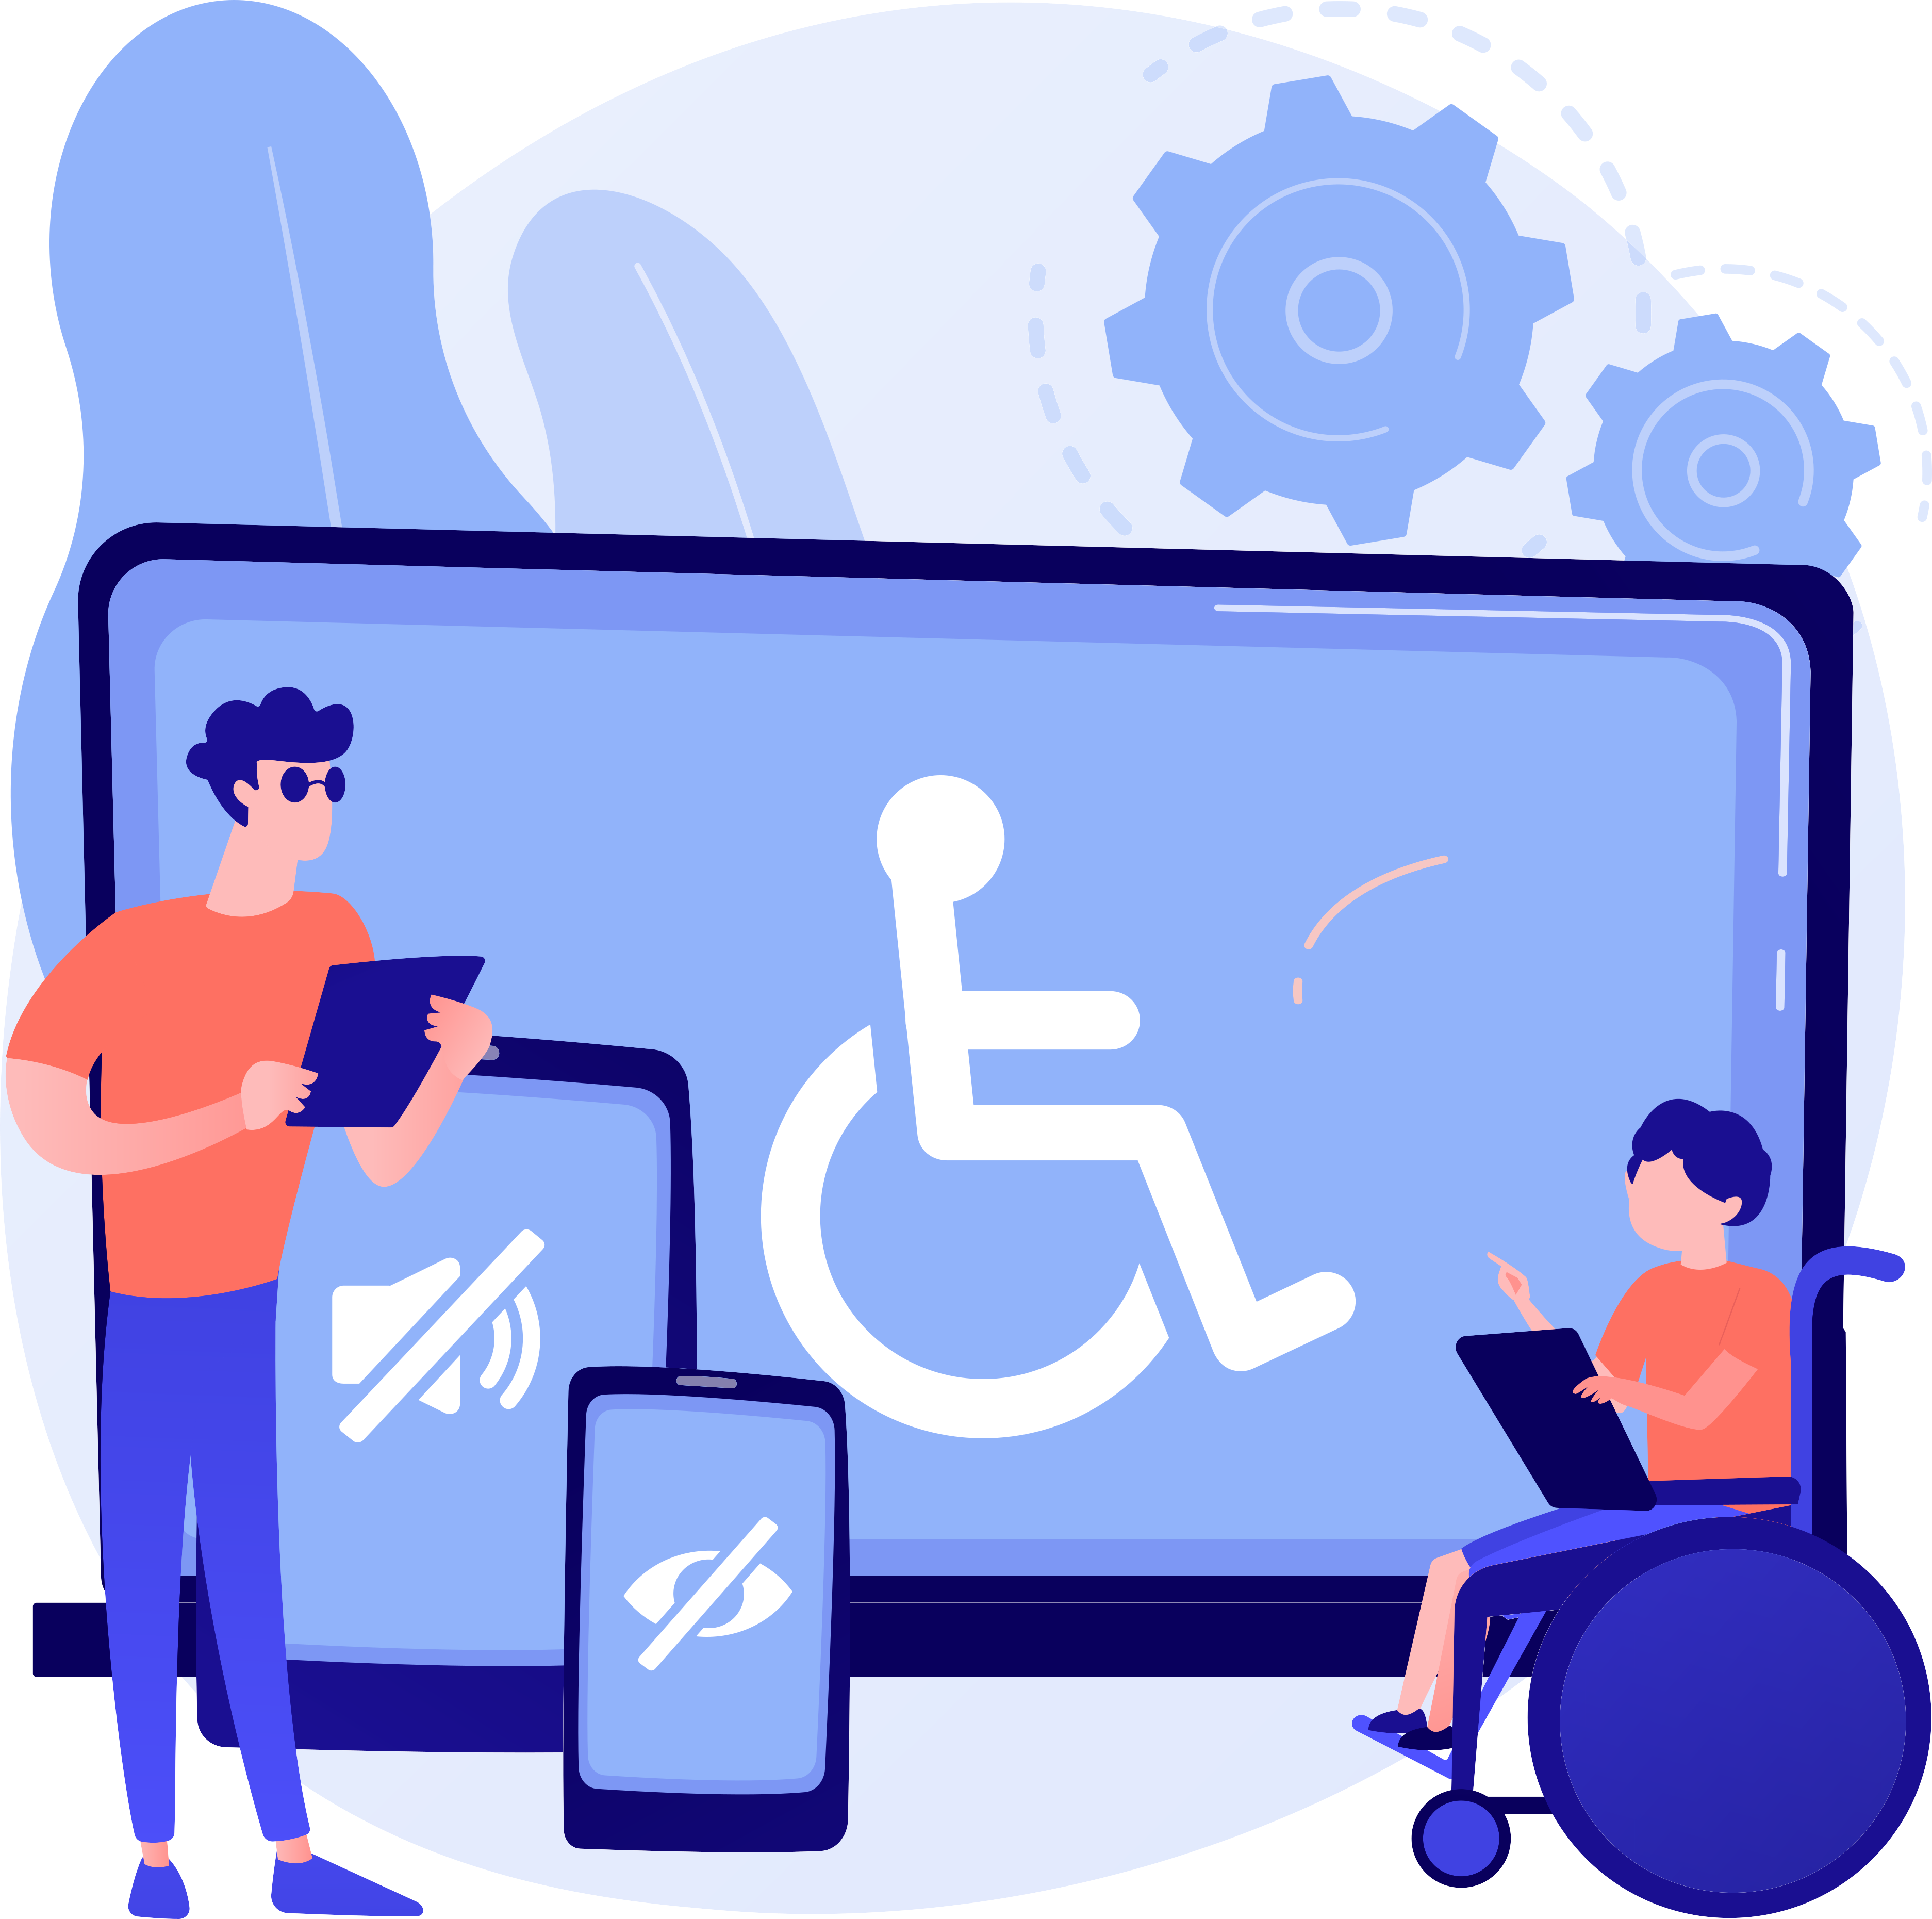 Una persona parada con un dispositivo móvil a su lado una persona en silla de ruedas con su laptop.